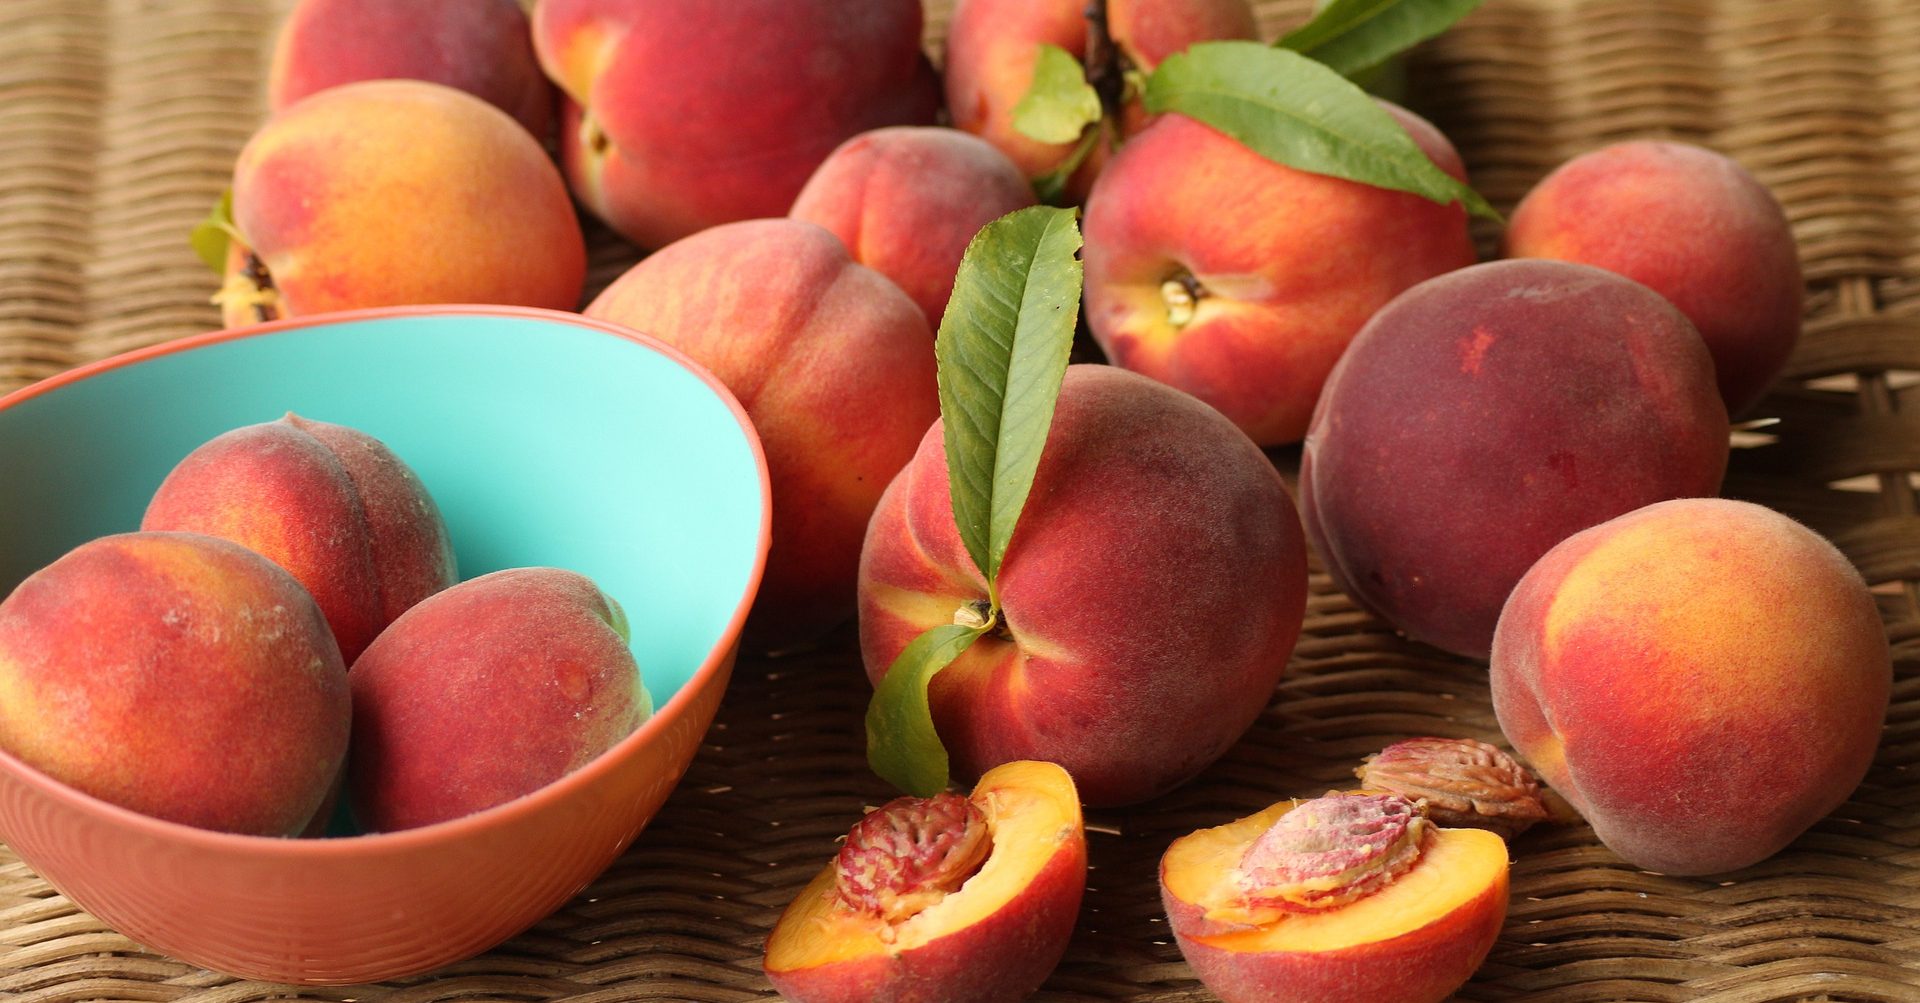 Cofepris alert for salmonella outbreak in peaches